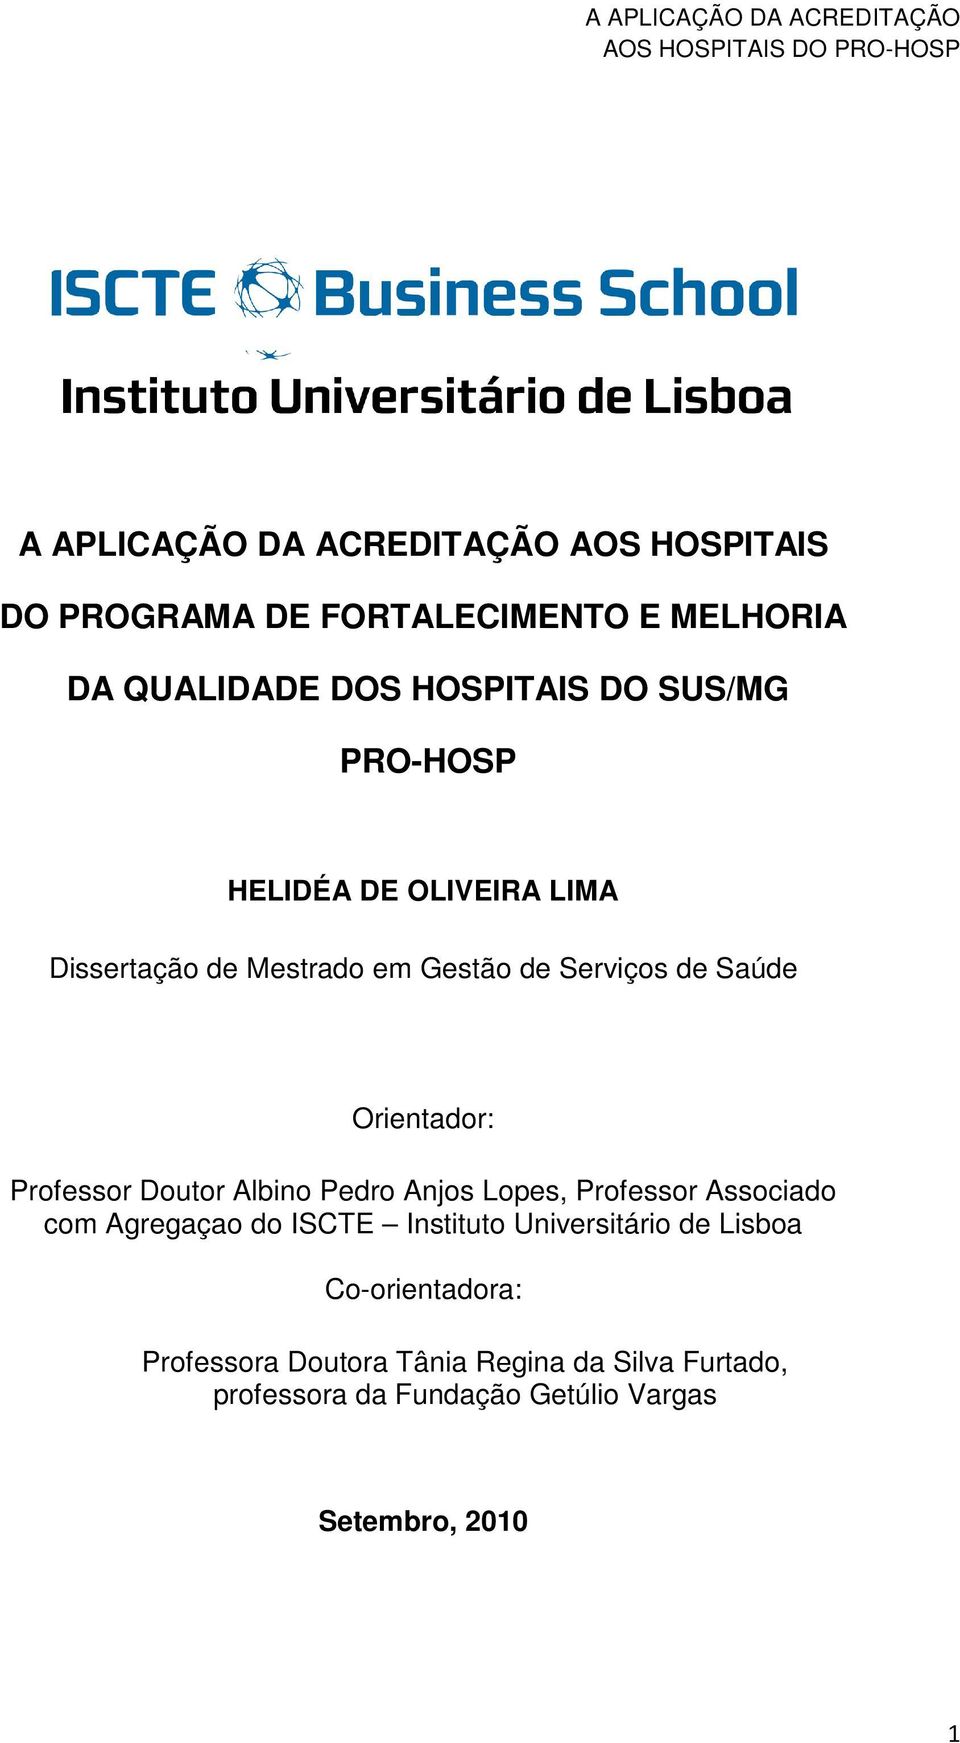 Professor Doutor Albino Pedro Anjos Lopes, Professor Associado com Agregaçao do ISCTE Instituto Universitário de